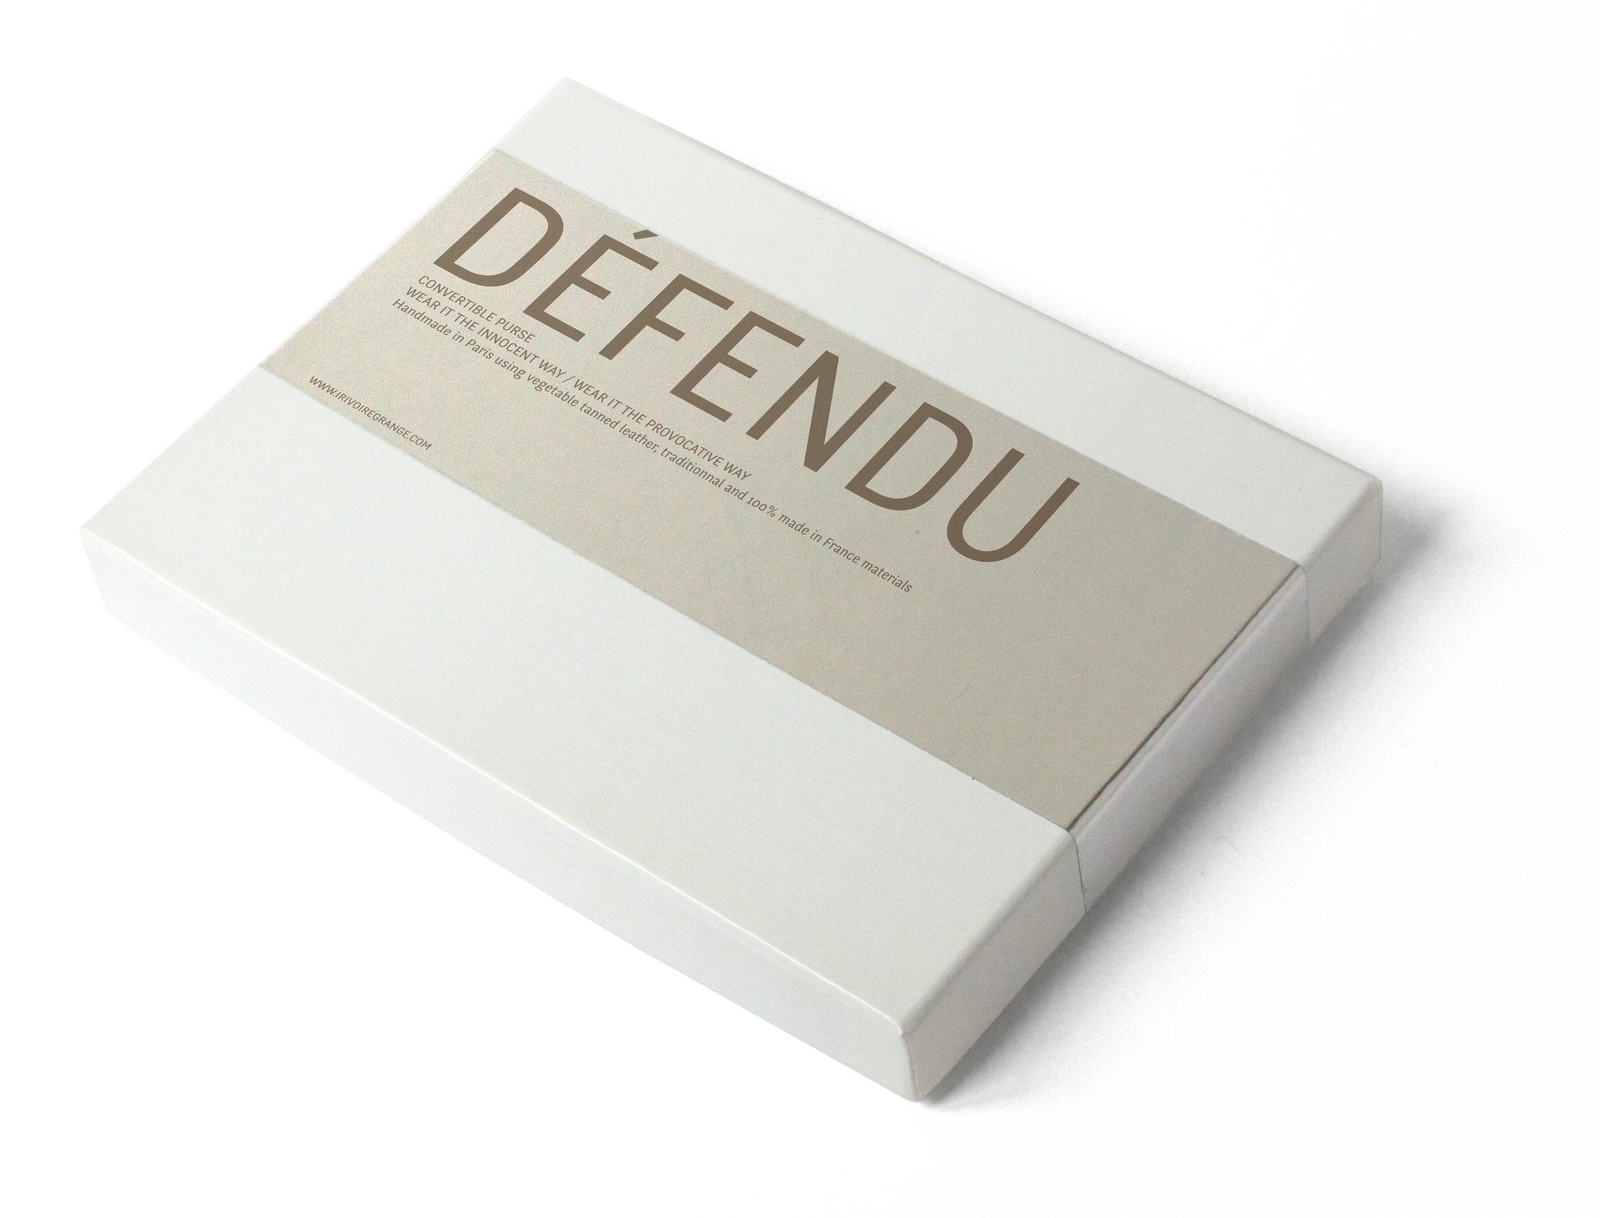 _Defendu_box